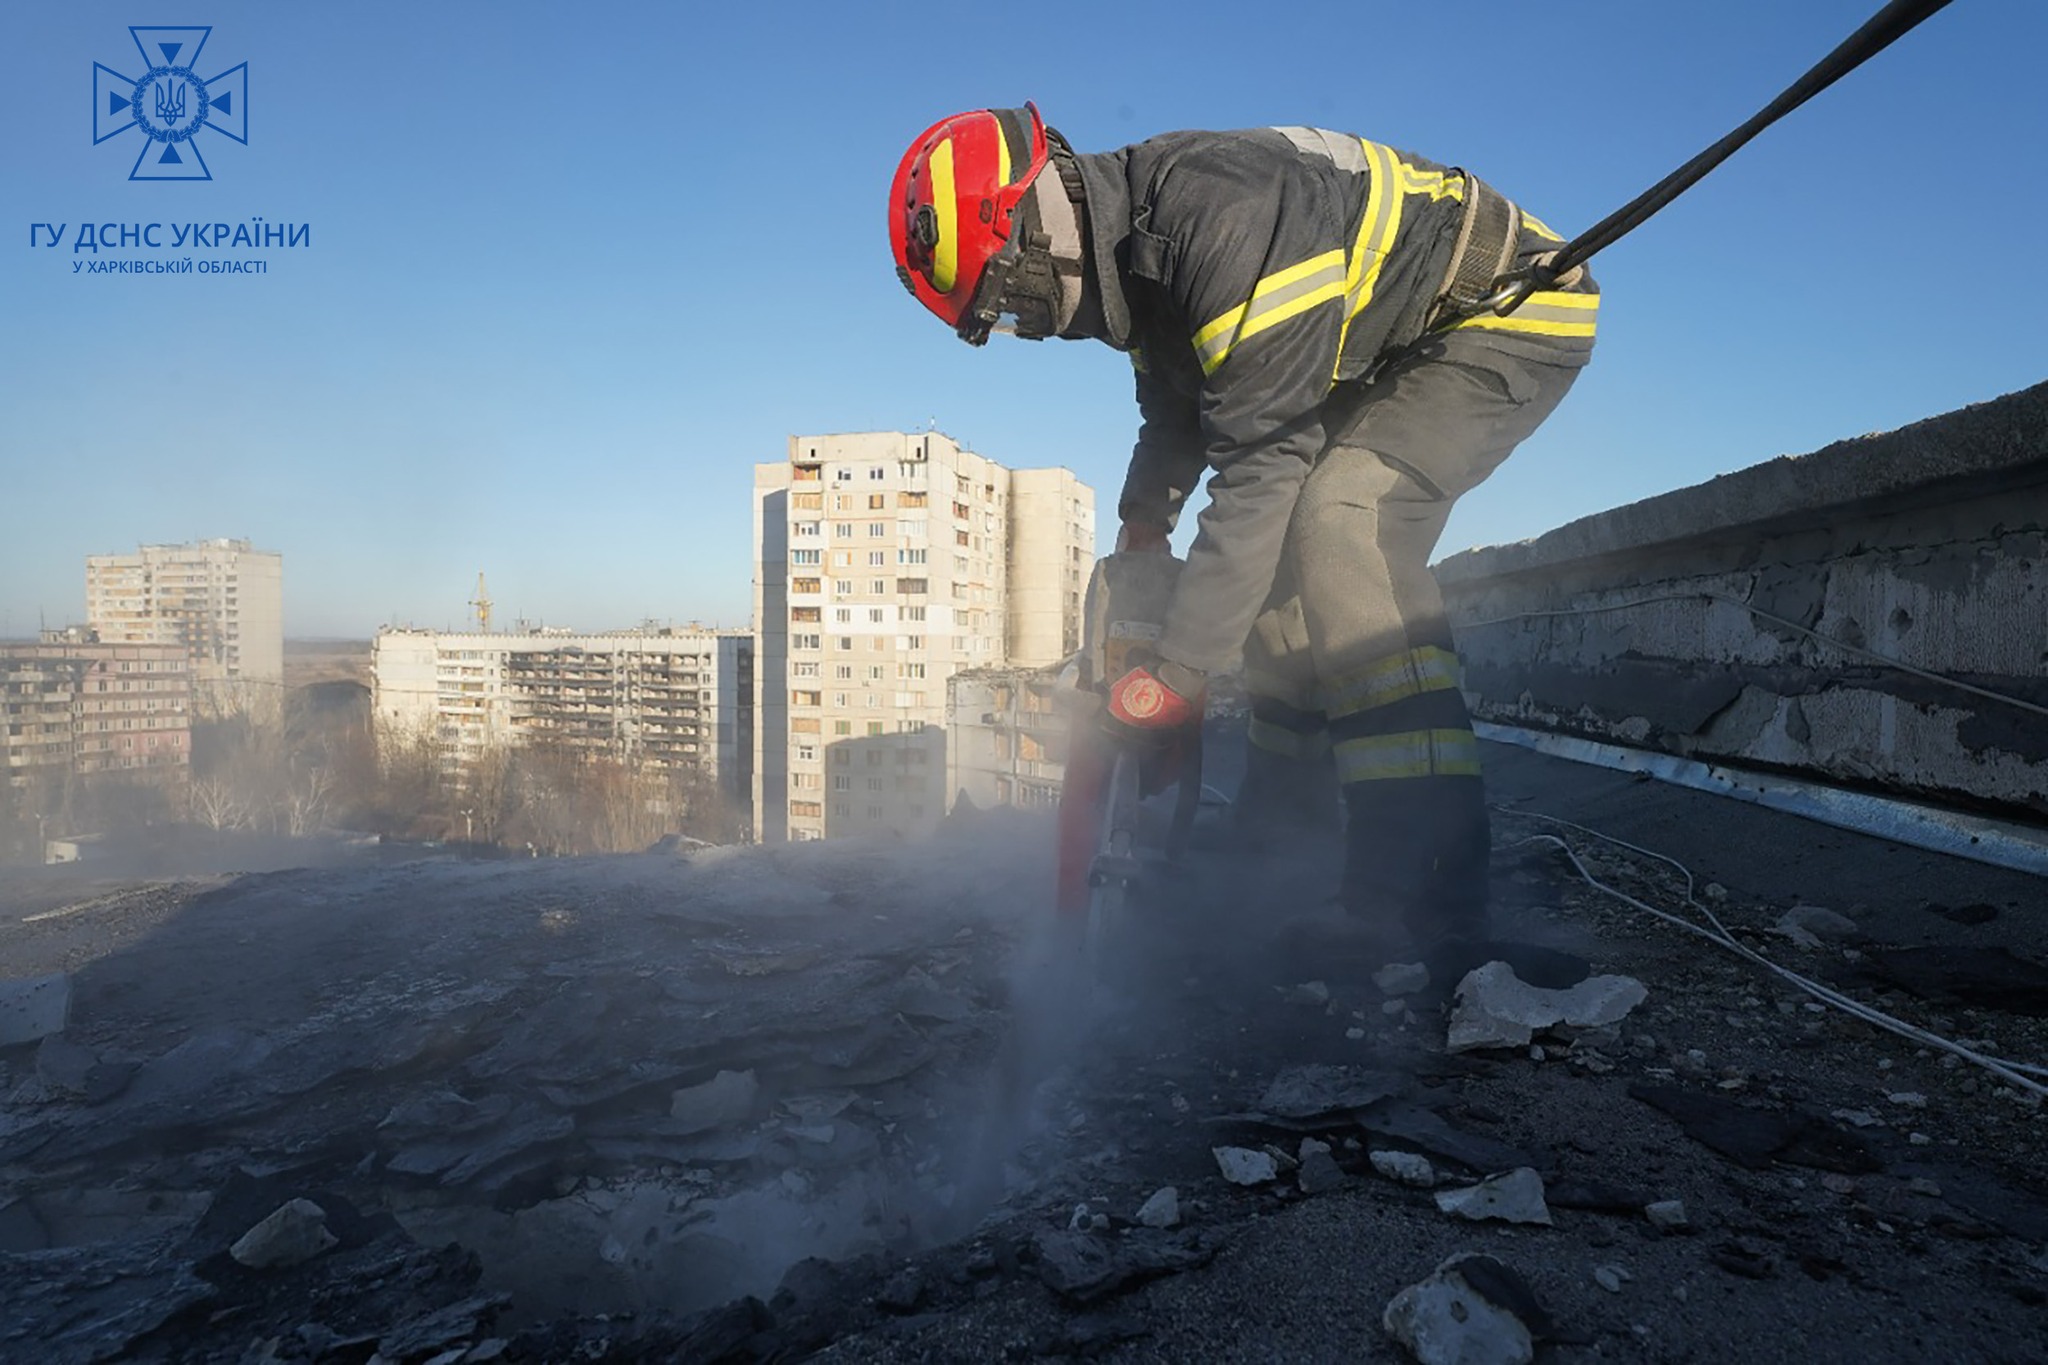  В Харькове разбирают завалы зданий 23 января для дальнейшего ремонта 2